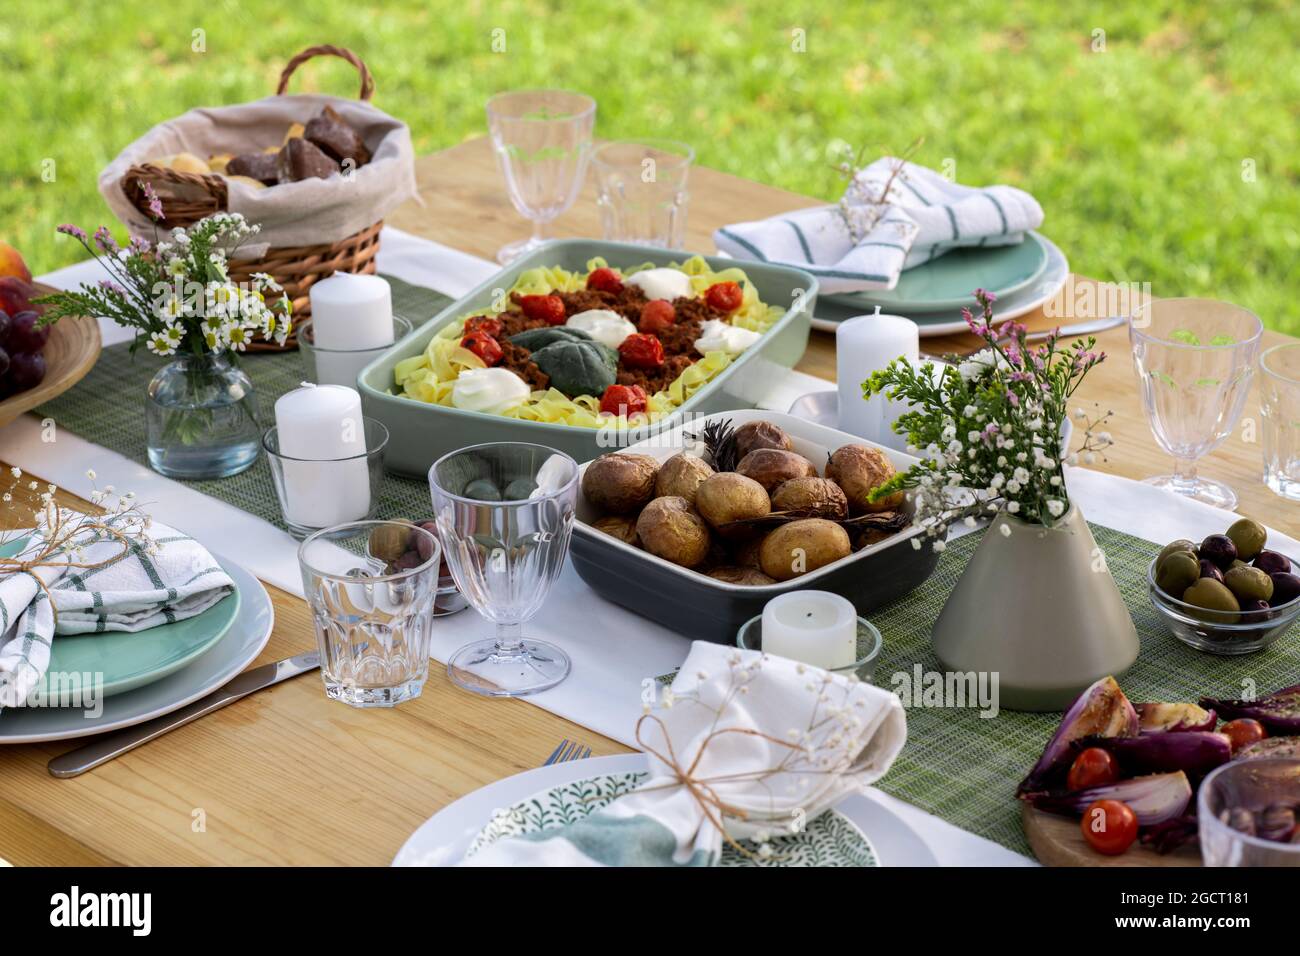 Serviert wird ein Tisch mit einer Vielzahl von appetitlichen hausgemachten Speisen, die zum Mittagessen zubereitet werden Stockfoto